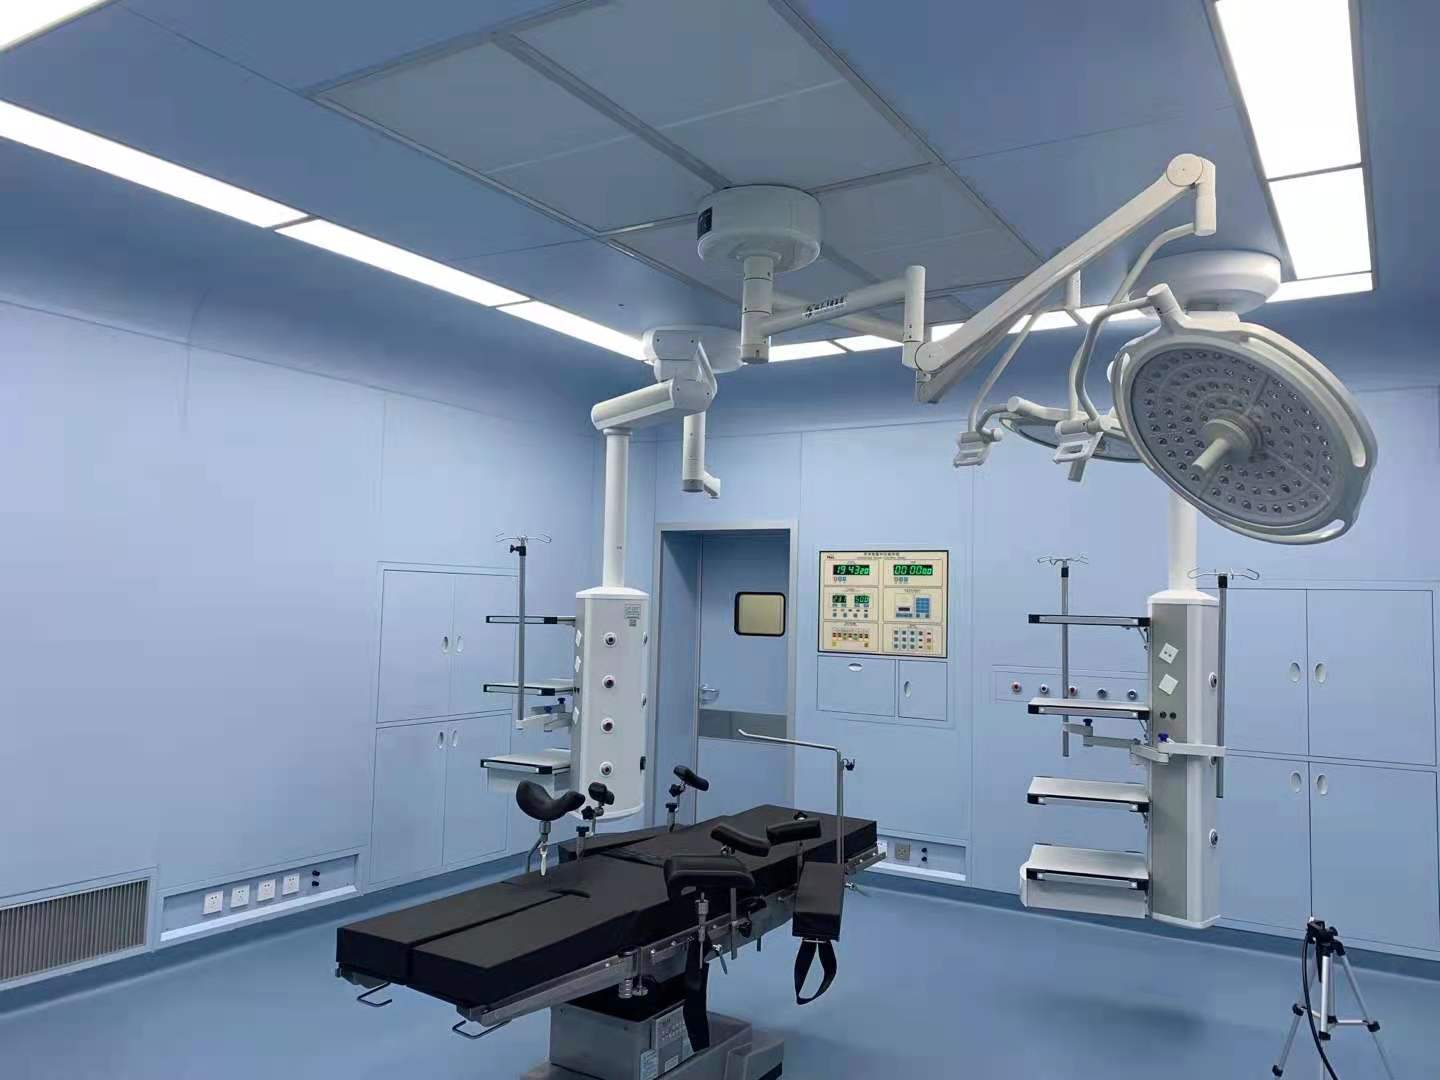 甘肃兰州净化公司告诉你一般合格的洁净手术室都包含哪些设备和区域环境呢？